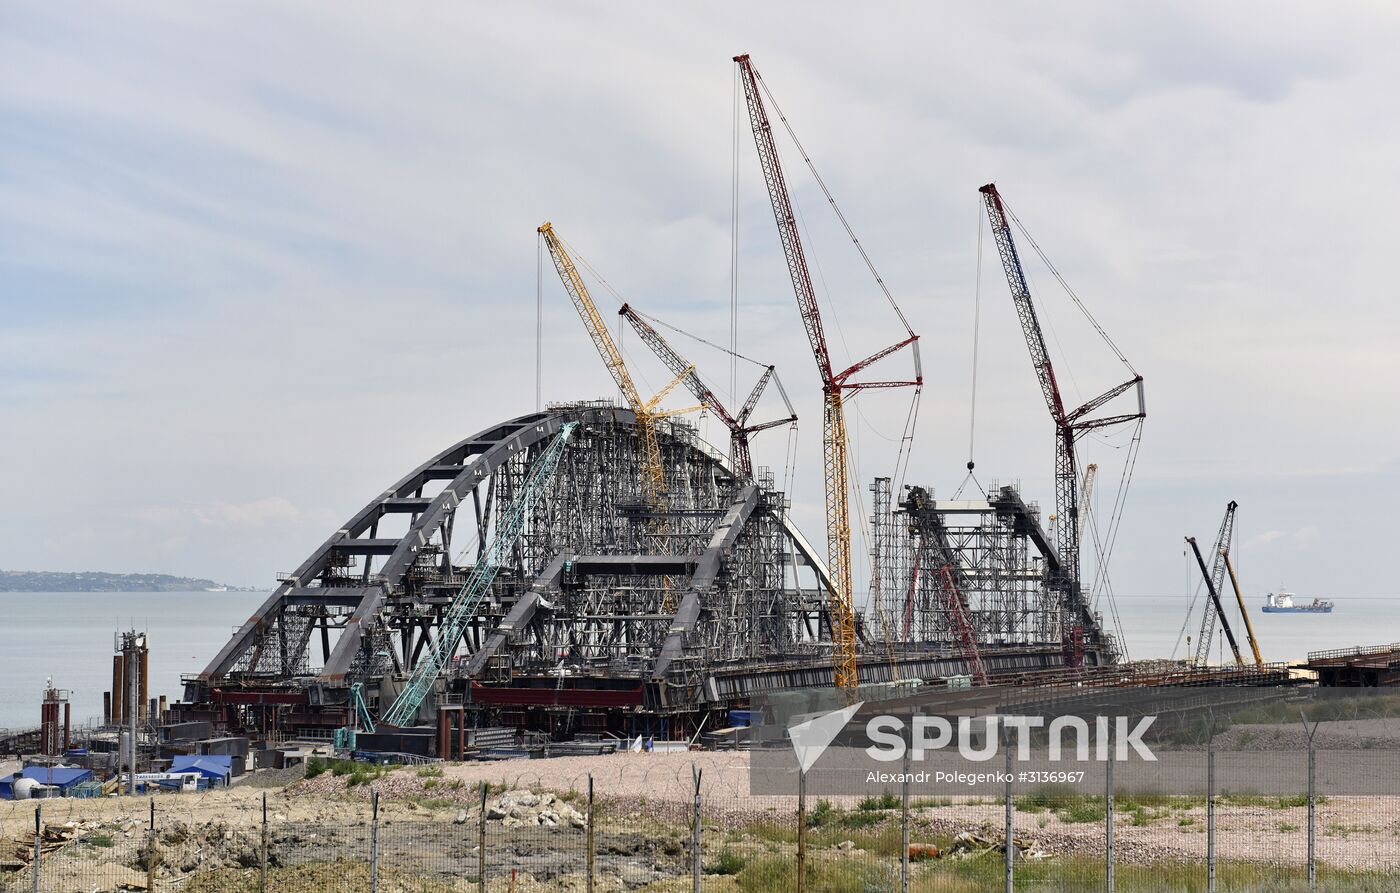 Railway part of the Kerch Strait Bridge assembled